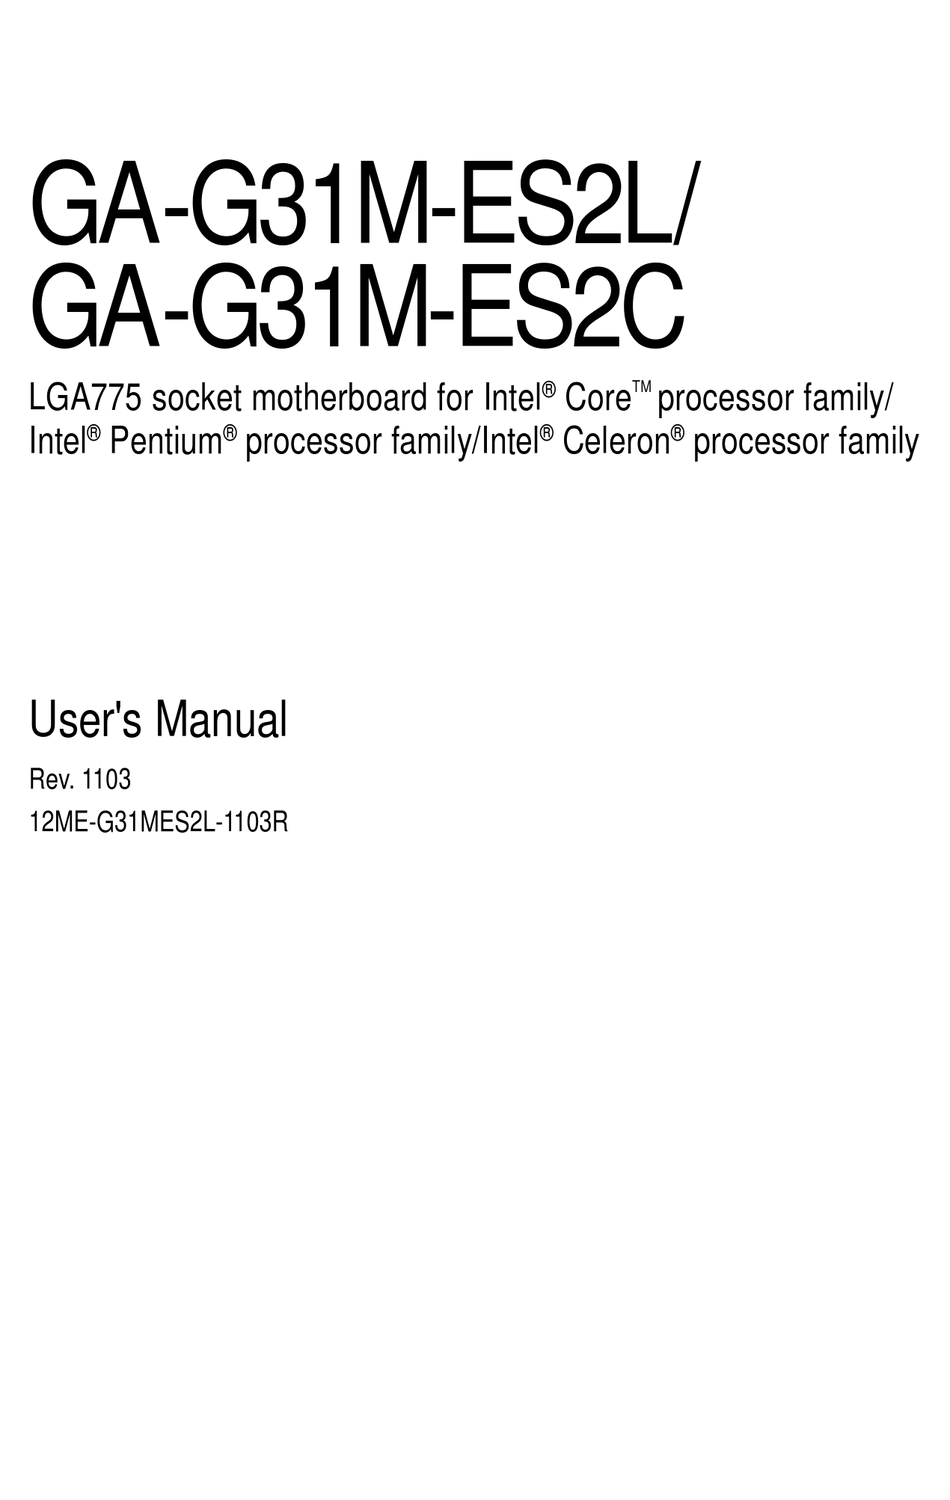 Gigabyte Ga G31m Es2c User Manual Pdf Download Manualslib